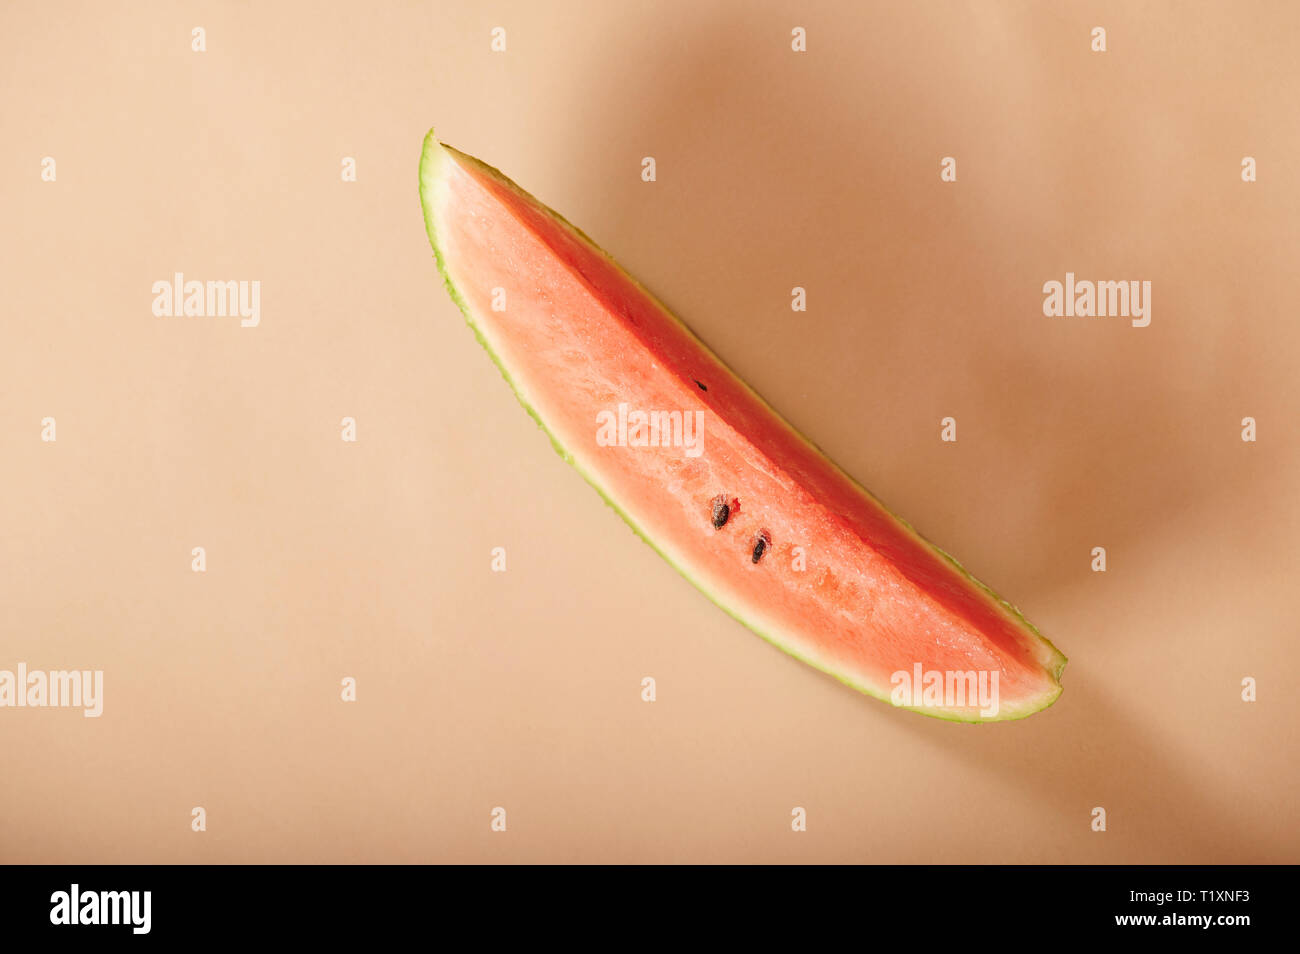 Eine Wassermelone Slice auf beige Farbe Hintergrund über anzeigen Stockfoto